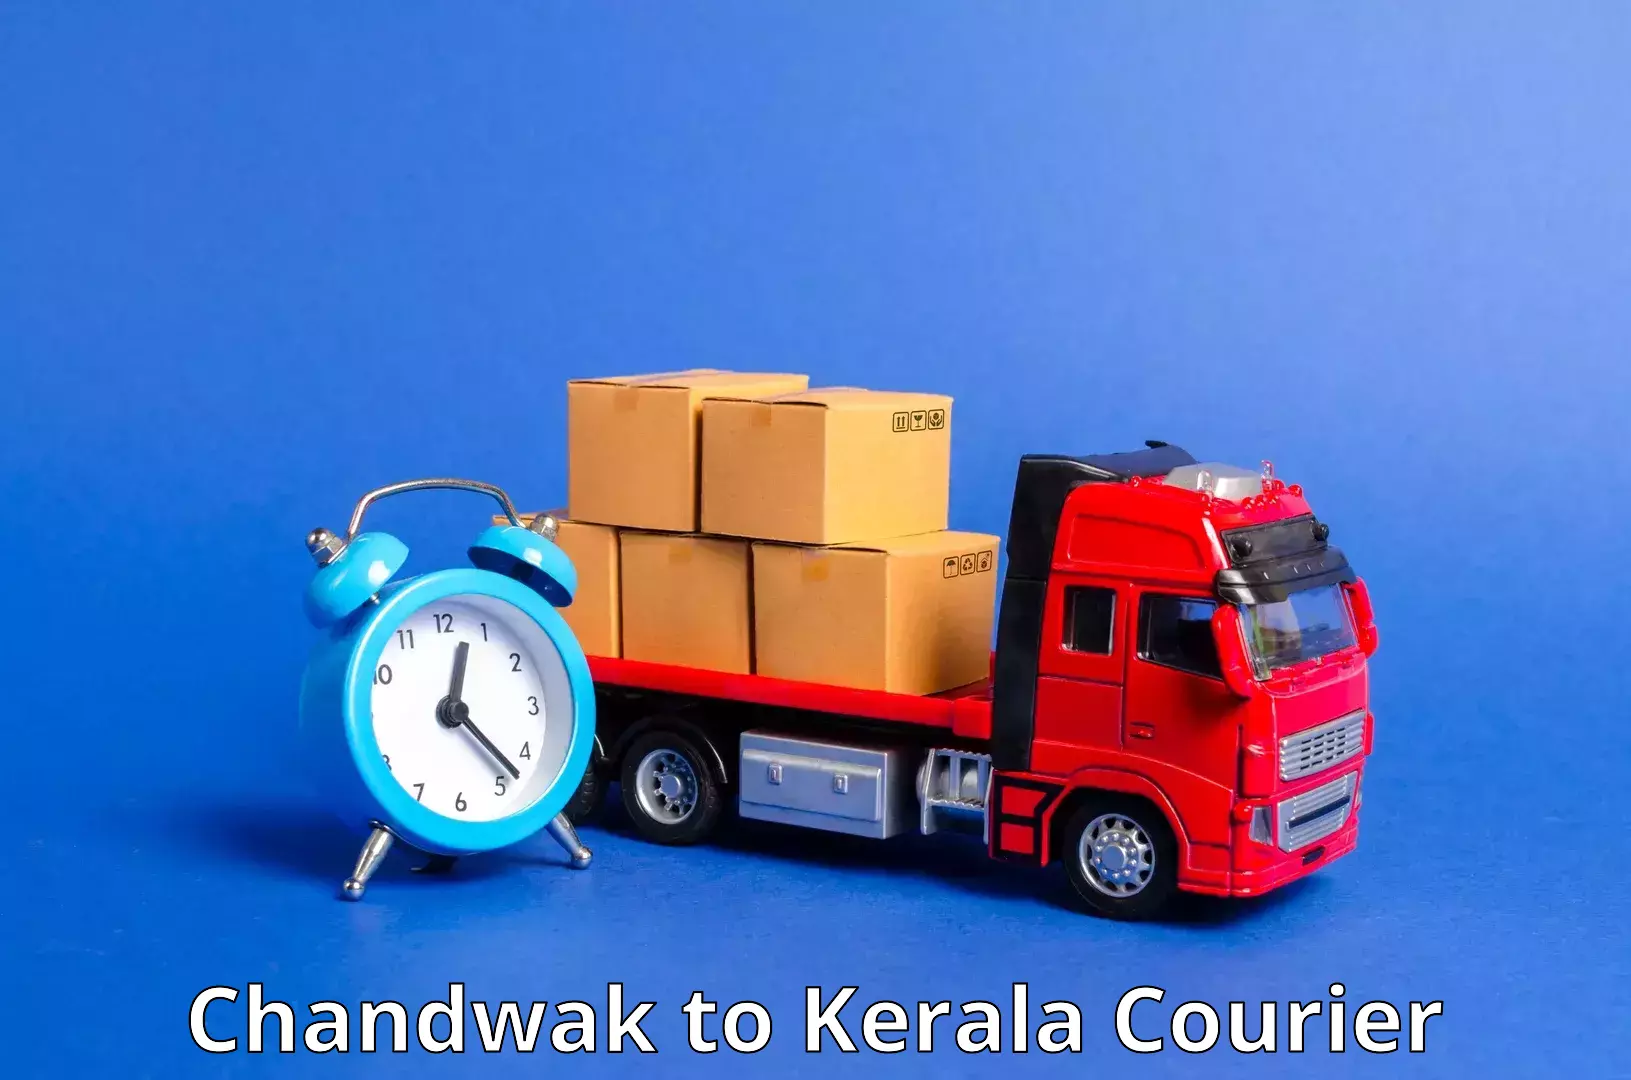 Full-service courier options Chandwak to Guruvayur